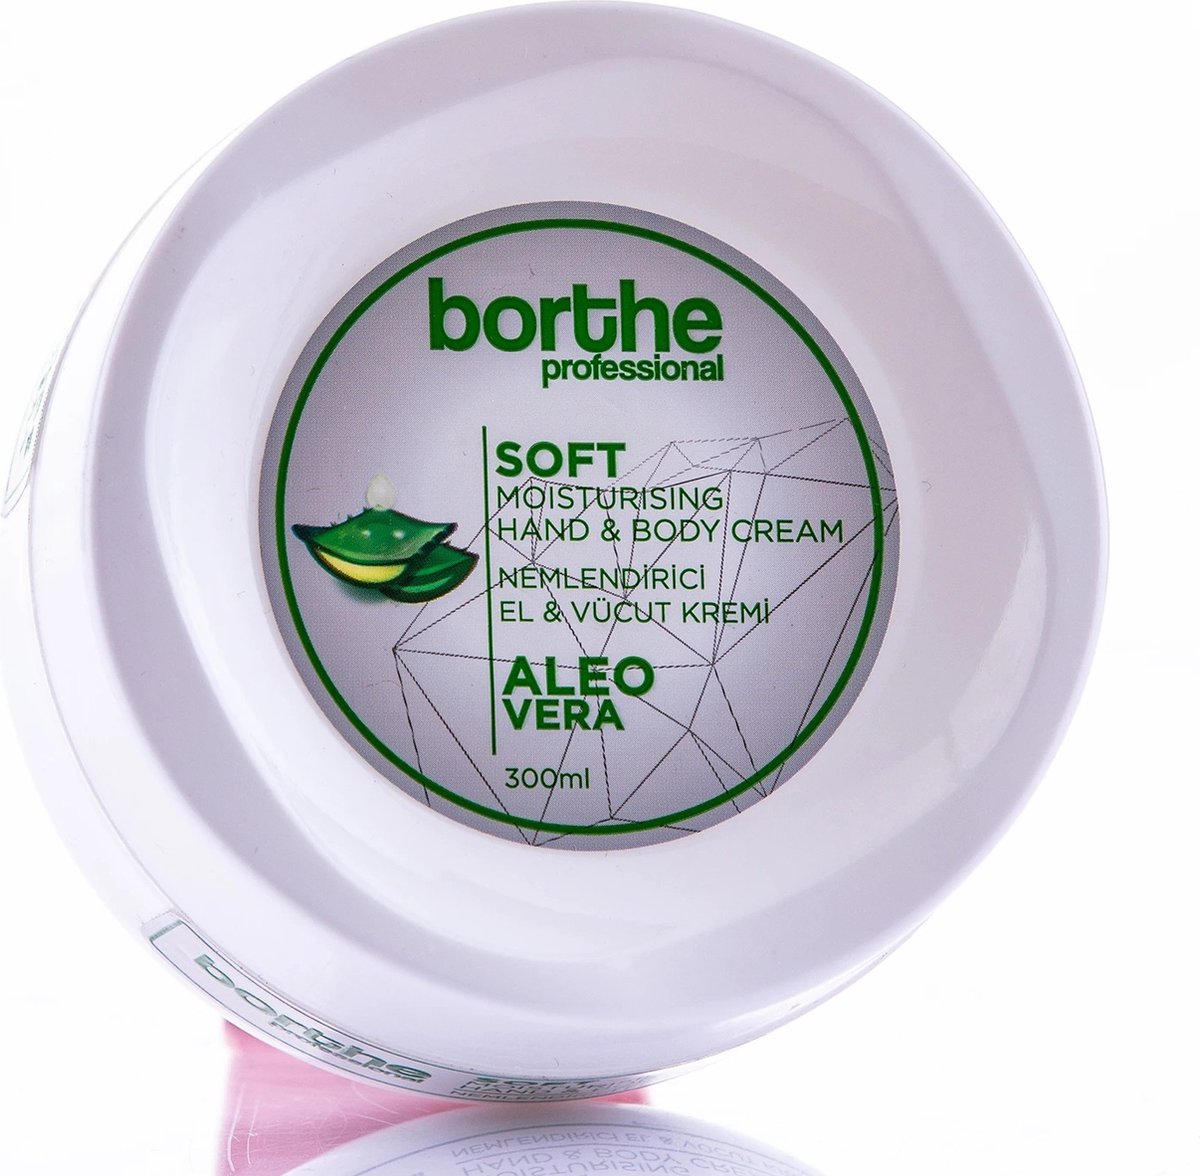 Borthe Professional - Hand & Body creme - 300 ml - Aleo Vera - Hydraterend - Voor droge handen